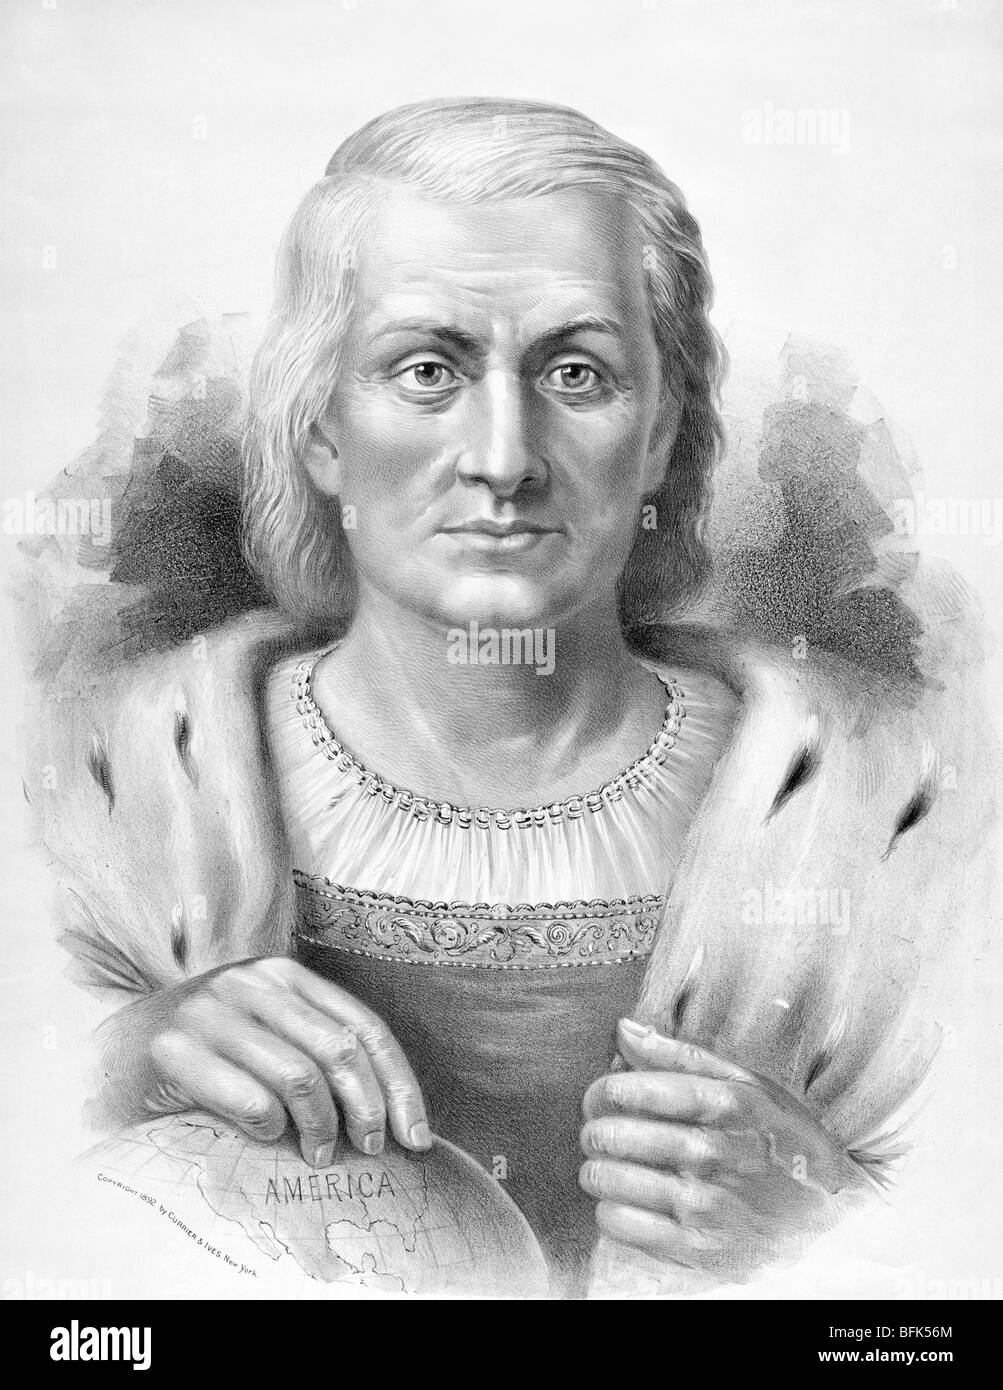 Impression portrait c1892 de l'explorateur Christophe Colomb (c1451 - 1506) - la "iscoverer' d'Amérique en 1492. Banque D'Images